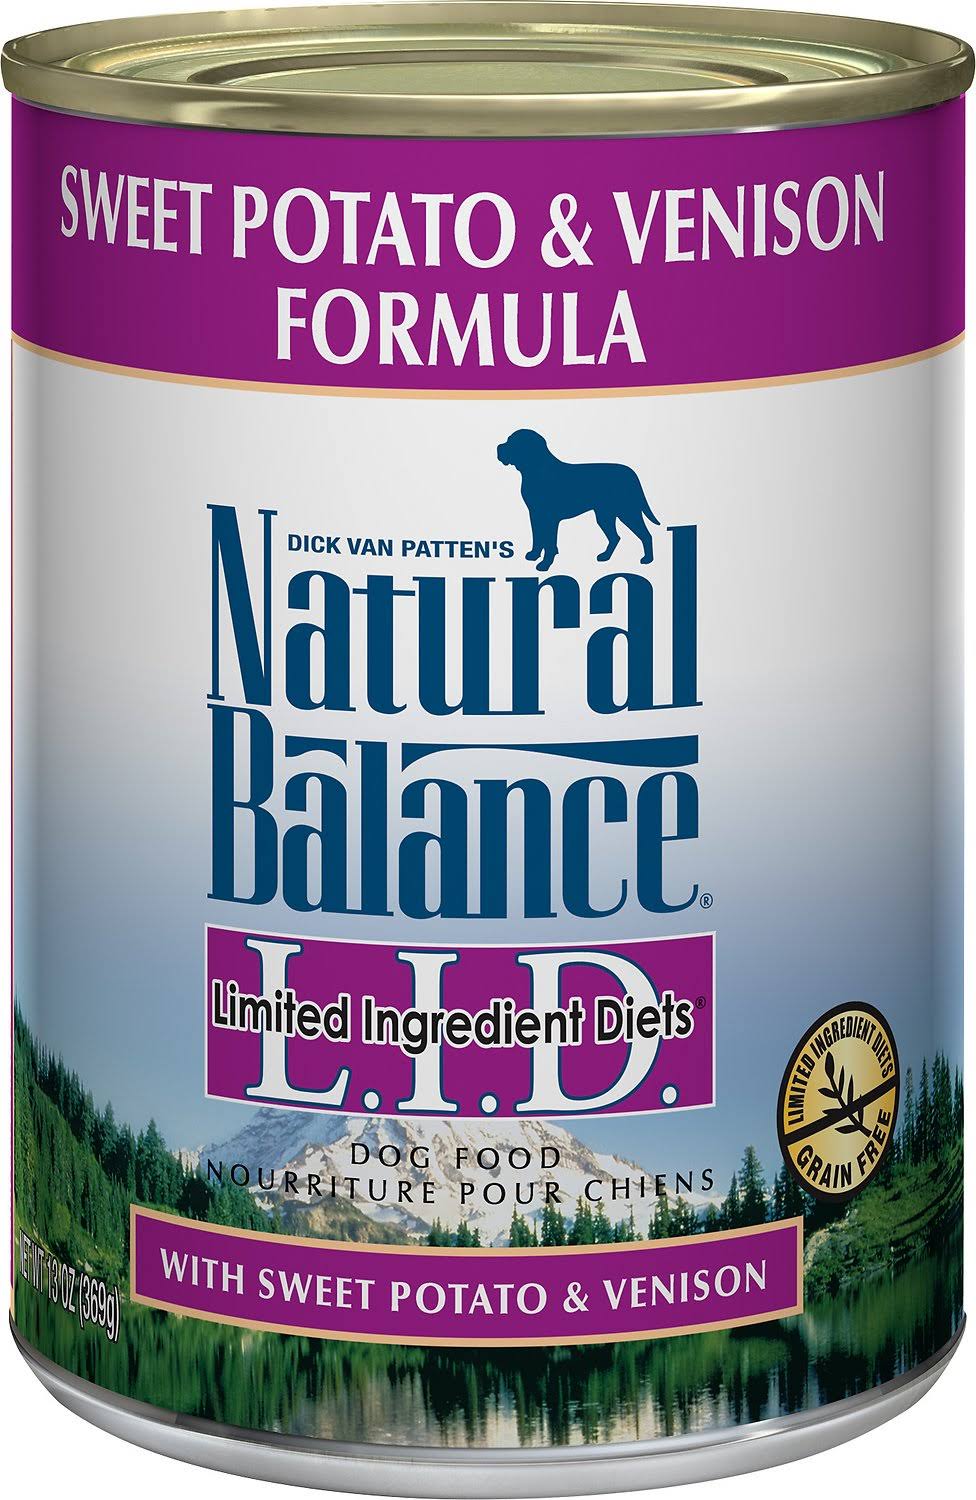 Natural Balance L.I.D. Limited Ingredient Diets Dog Food, Sweet Potato & Venison Formula - 13 oz